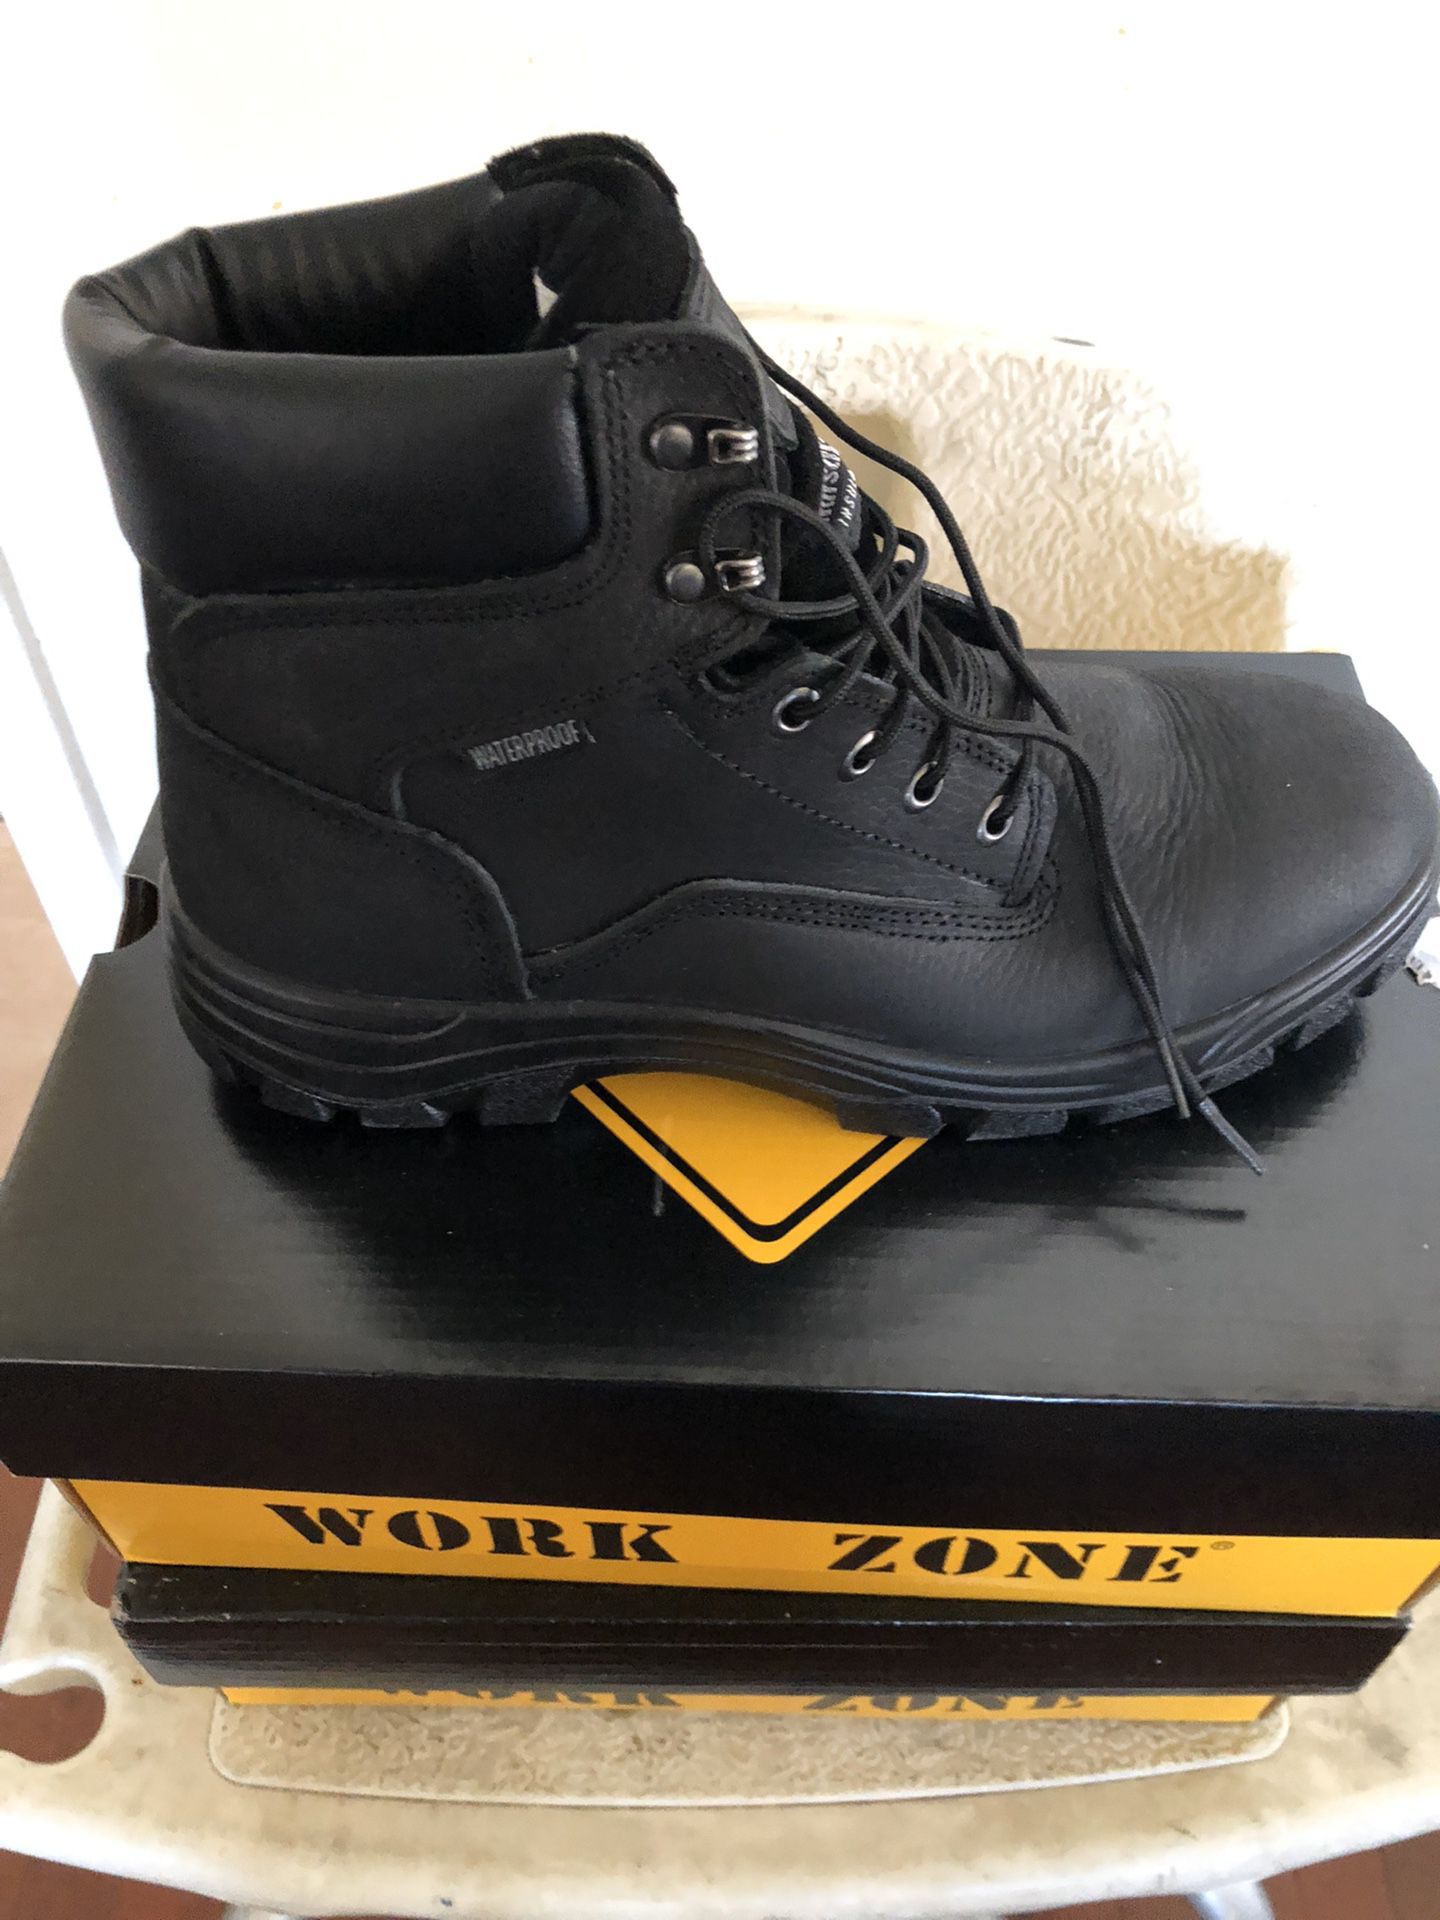 NEW work boots waterproof